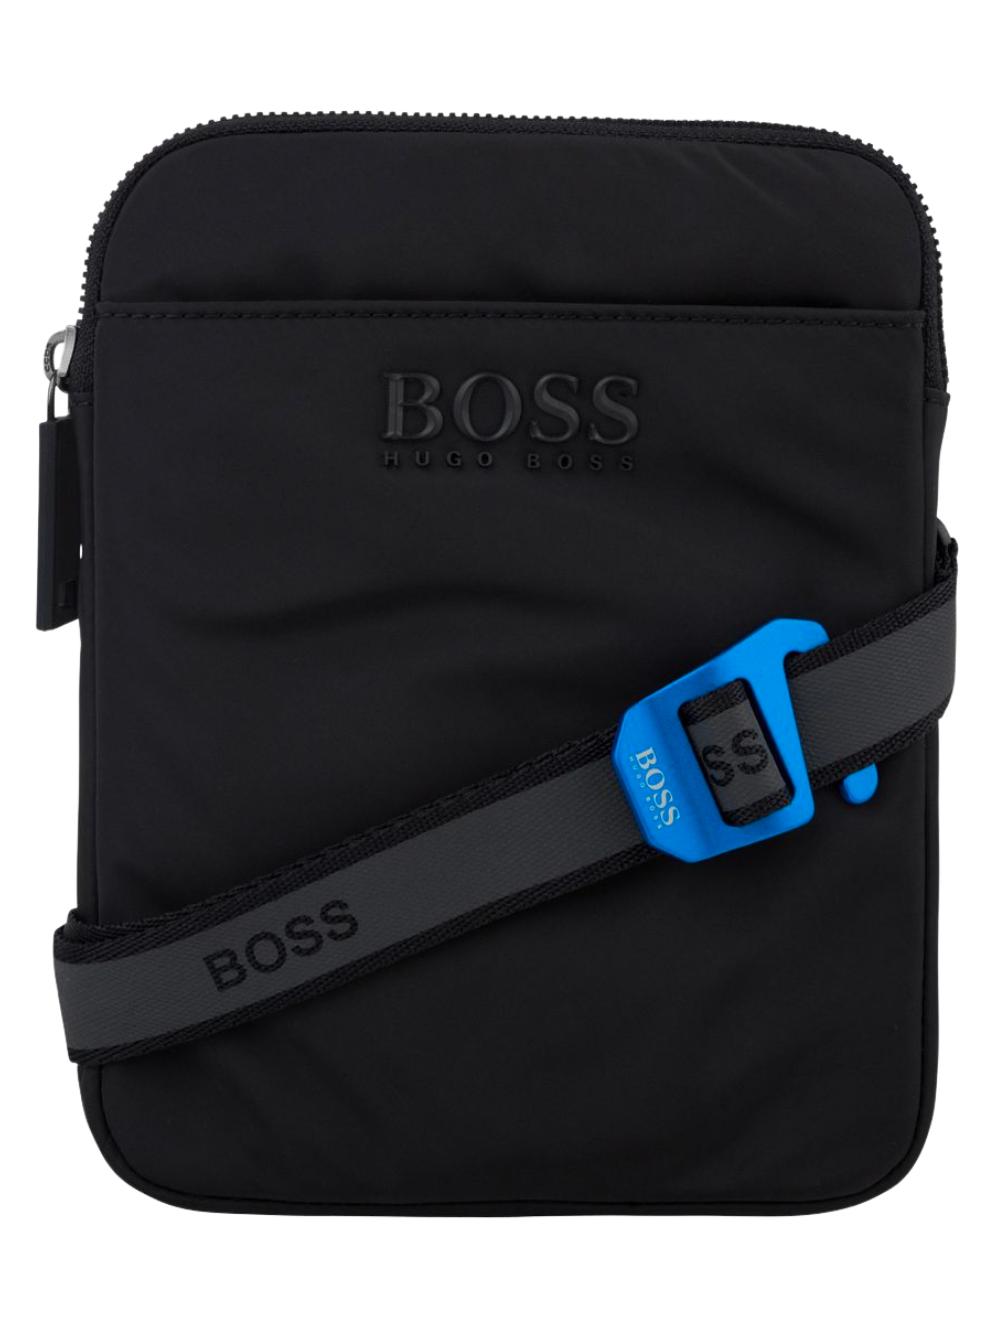 BOSS by HUGO BOSS Boss Crossbody Bag Black for Men | Lyst